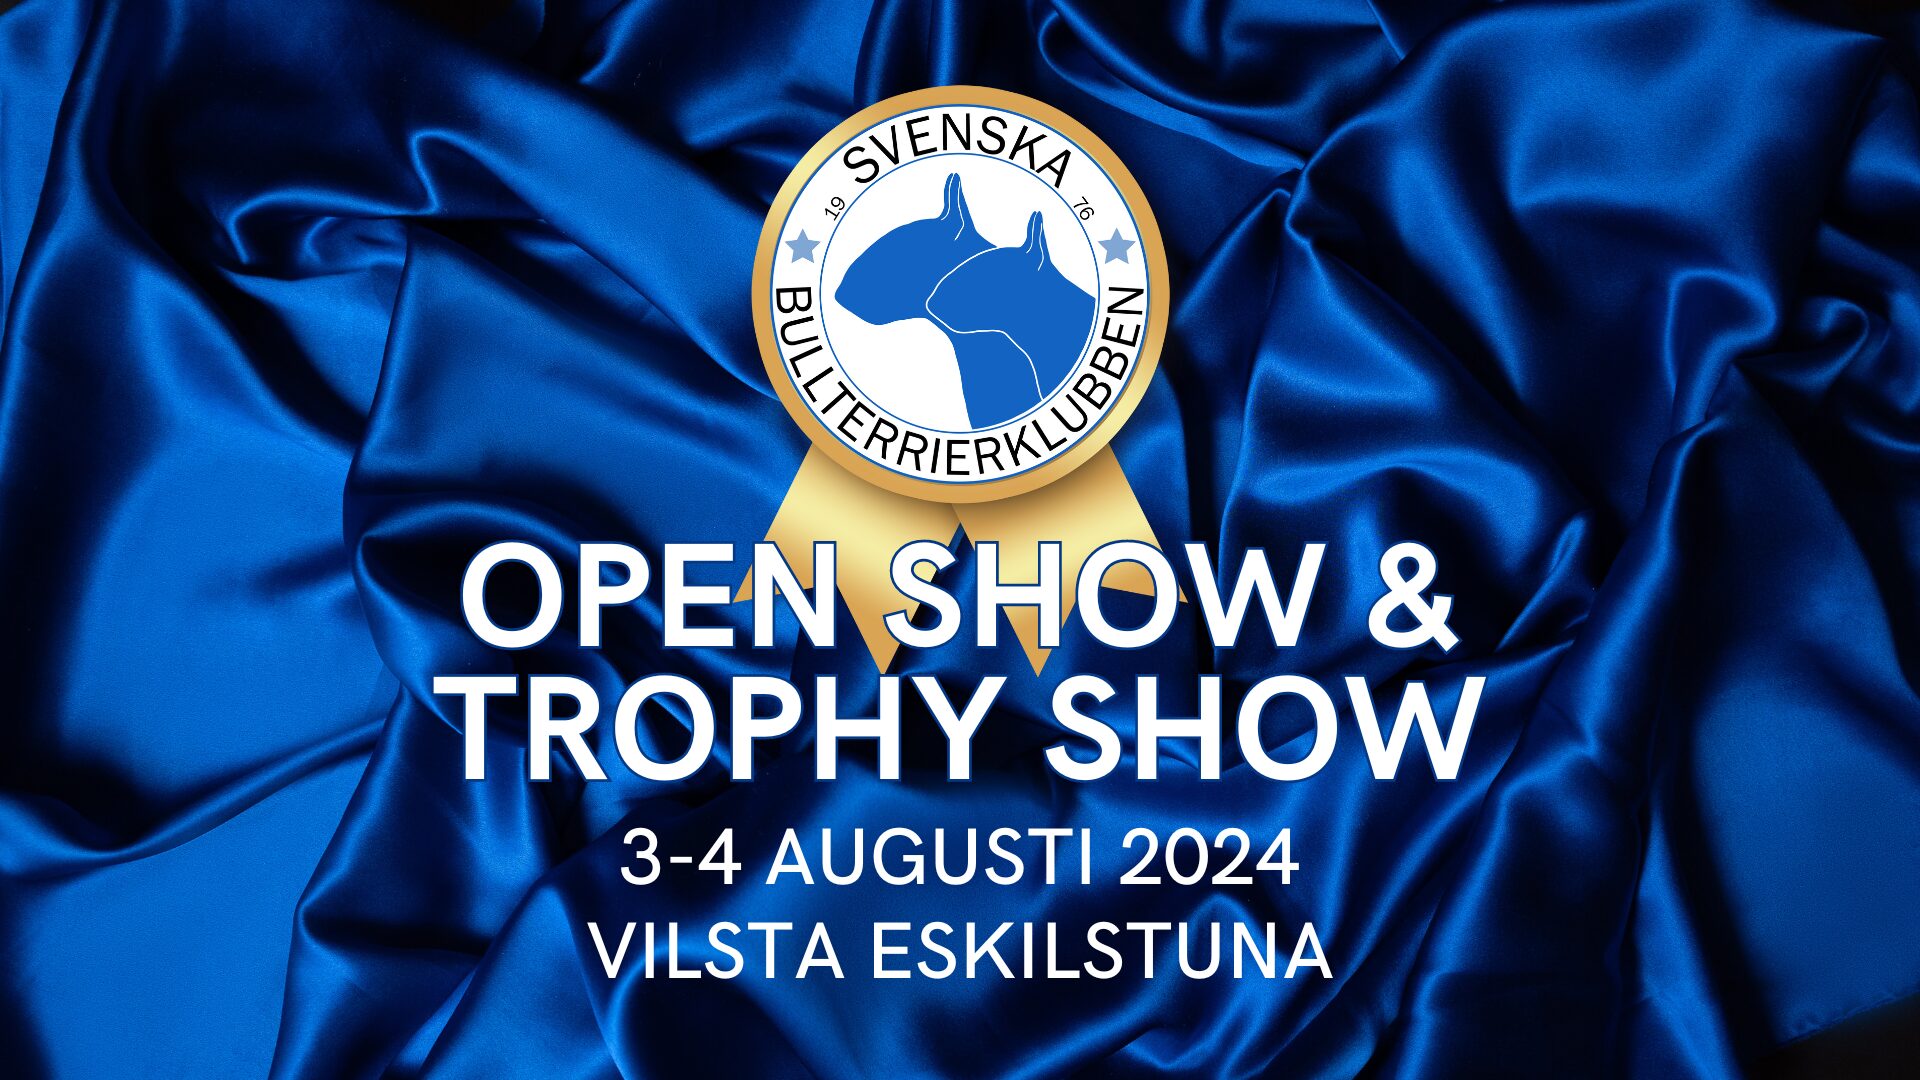 SvBtk Open Show & Trophy Show 2024